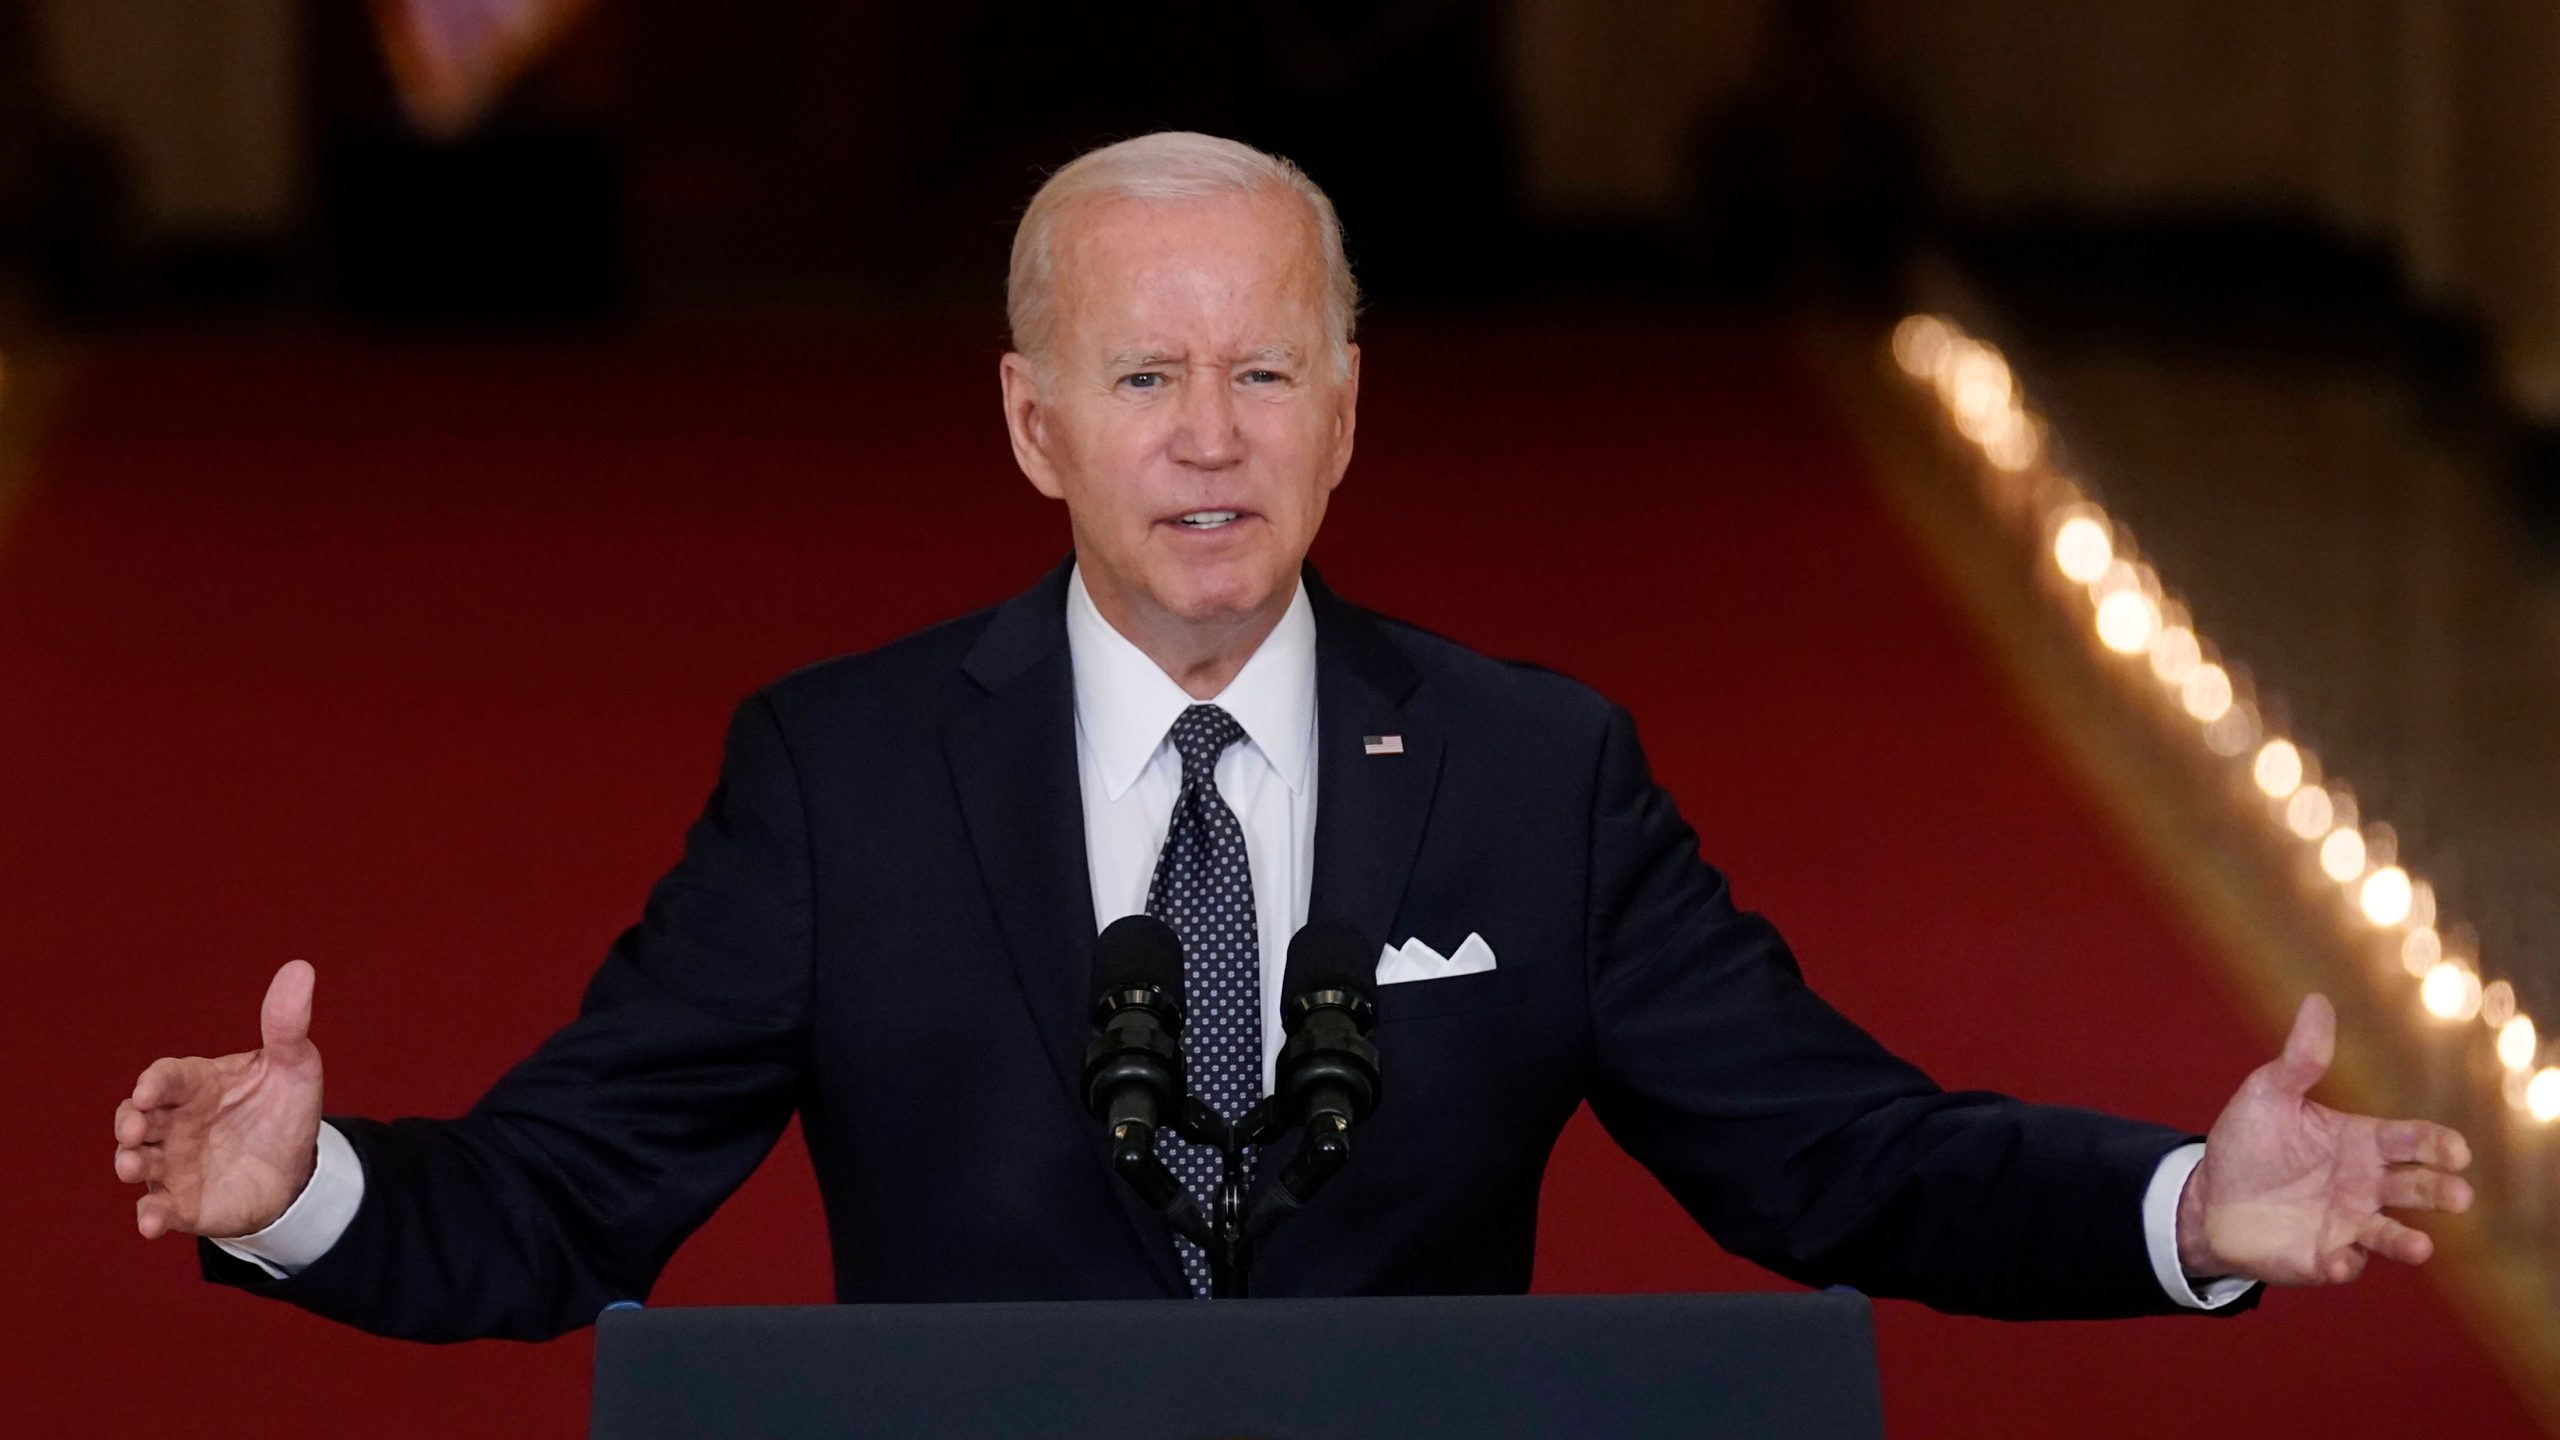 Joe Biden says US not party to Ukraine’s territorial decisions